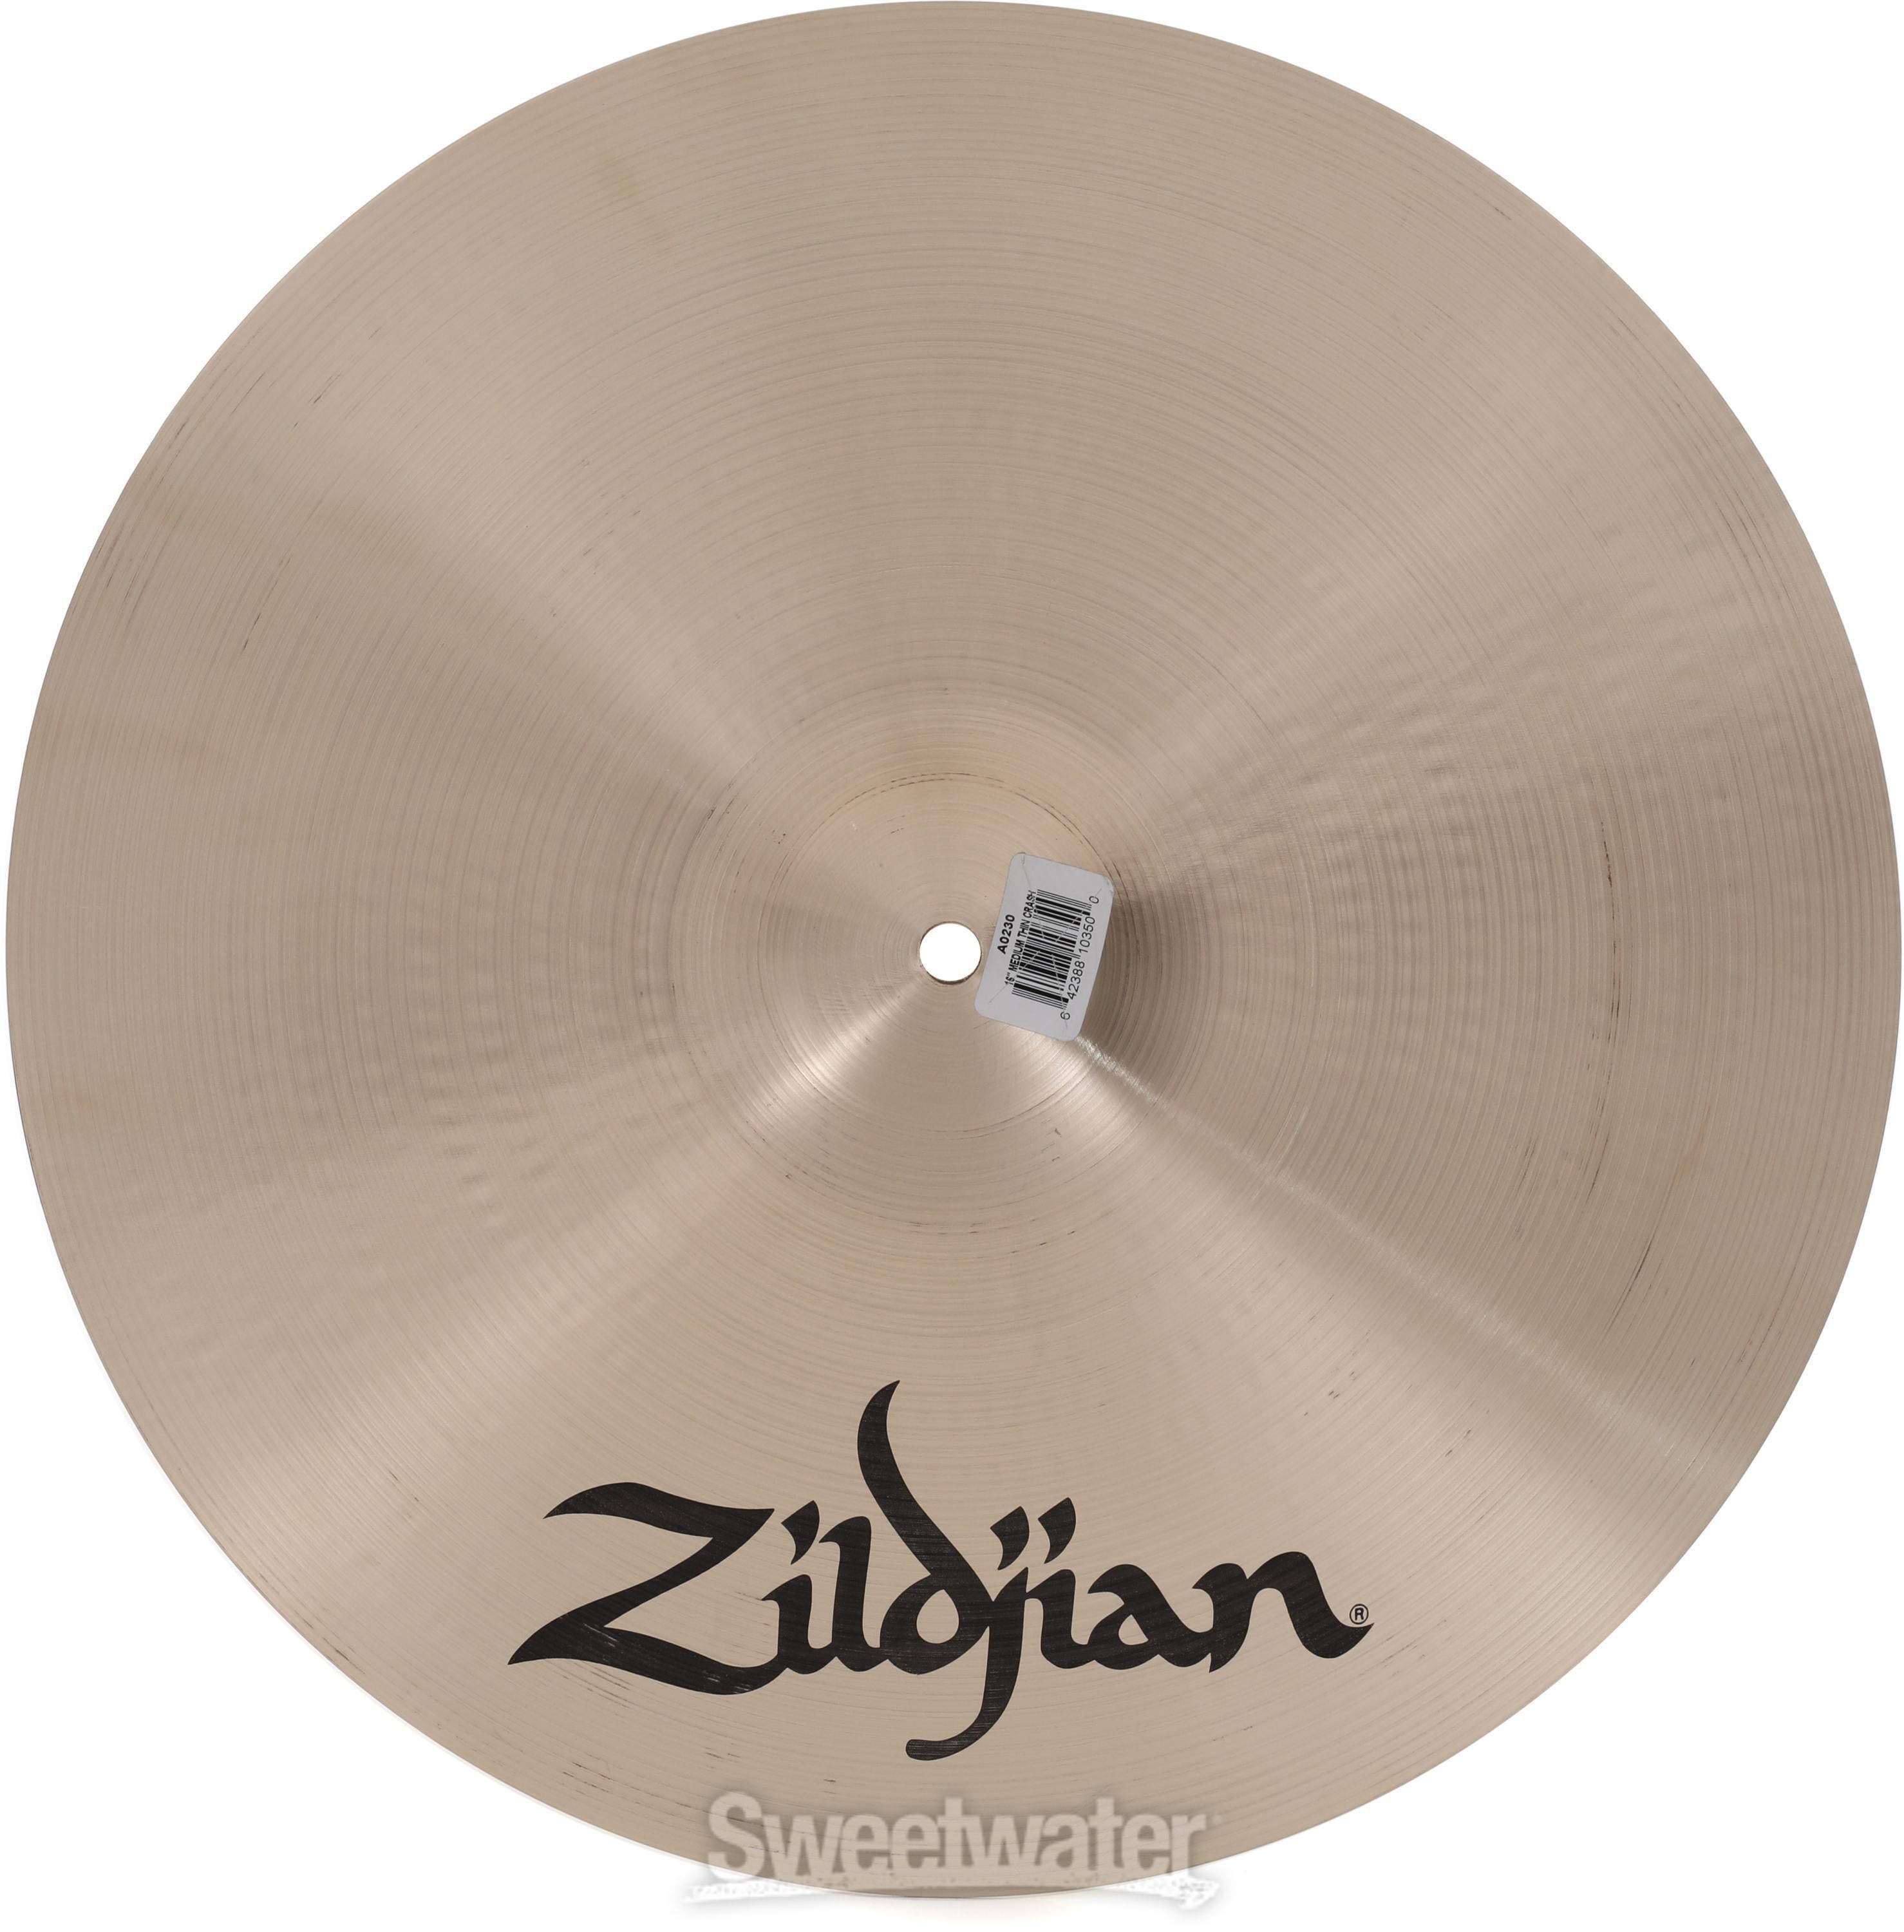 Zildjian 16 inch A Zildjian Medium-thin Crash Cymbal | Sweetwater